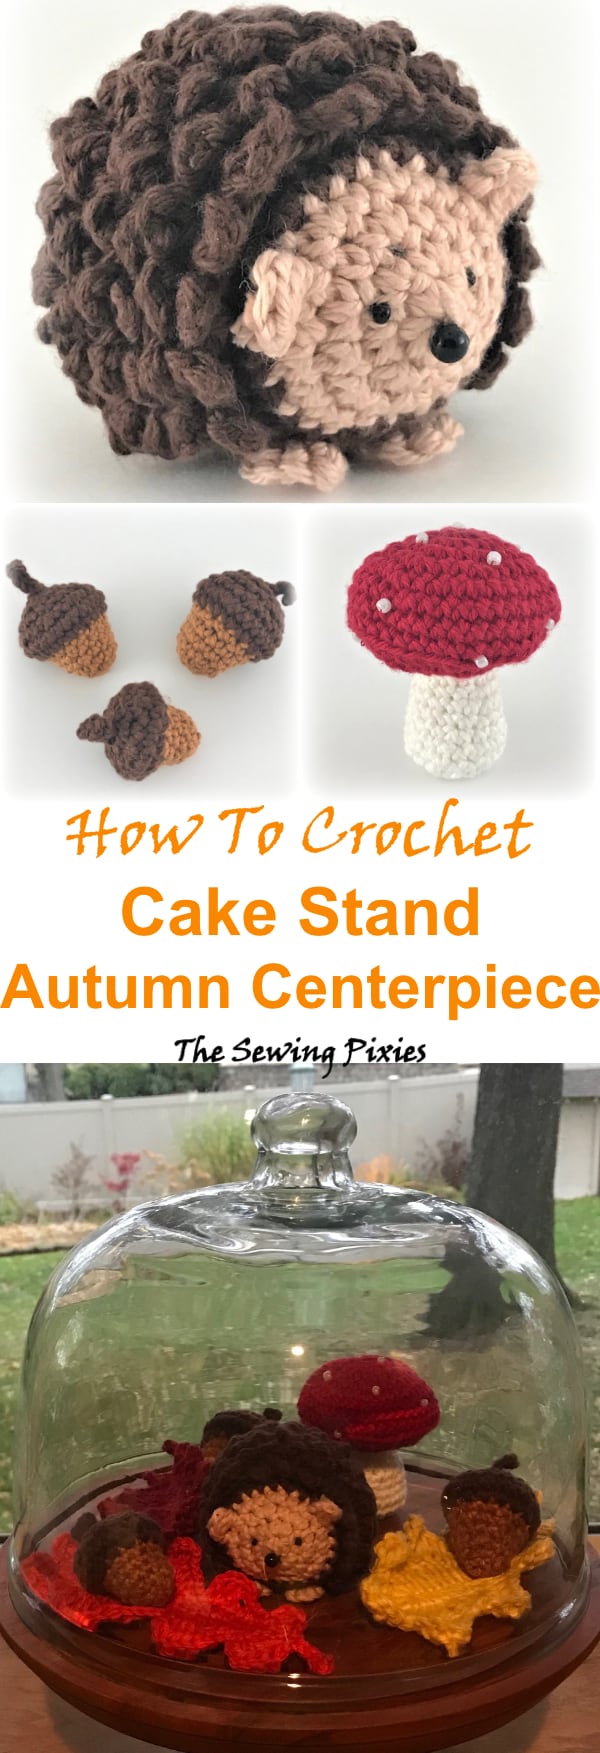 Learn how to crochet autumn crochet cake stand centerpiece #crochetautumncenterpiece, #chrochethedgehogpattern, #crochetmushroompattern, #crochetacornpattern, #easyfallcrochet